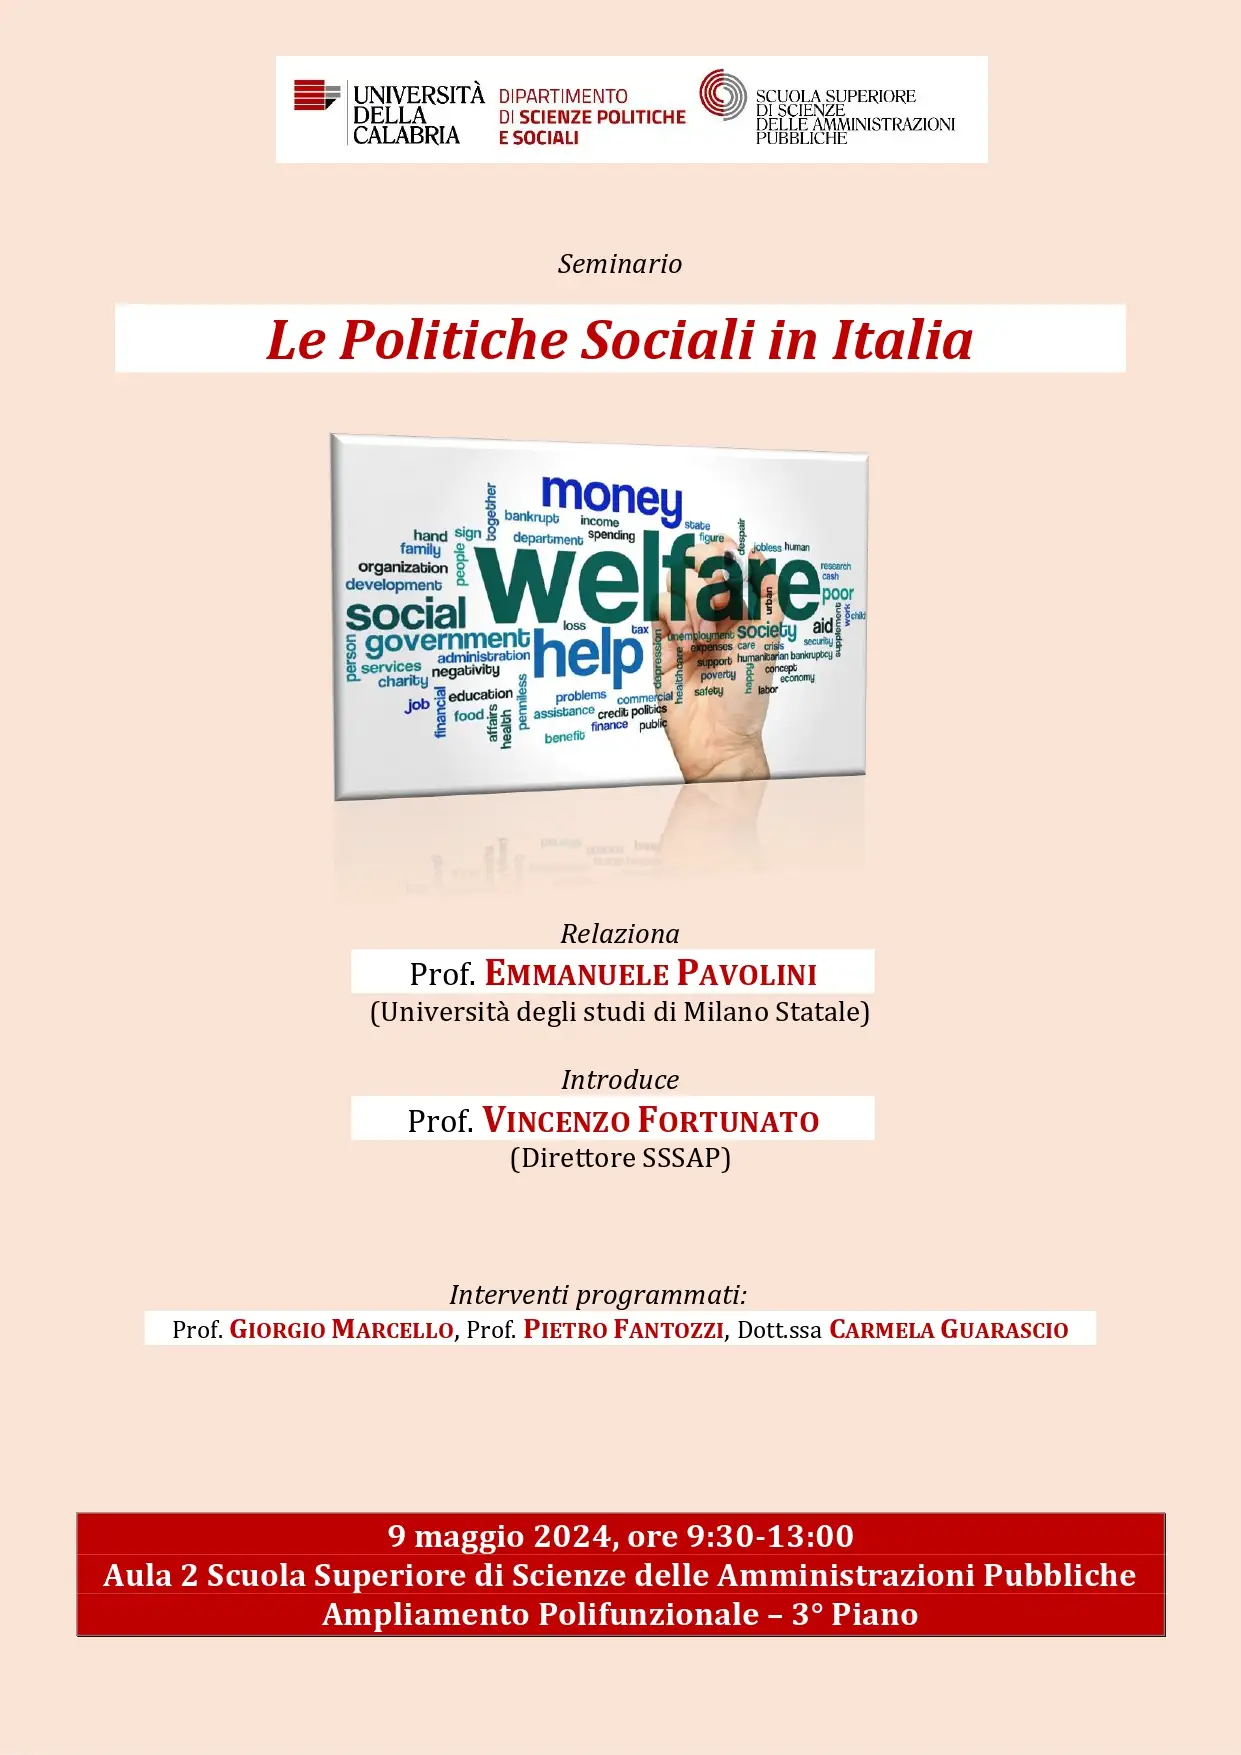 Le politiche sociali in Italia